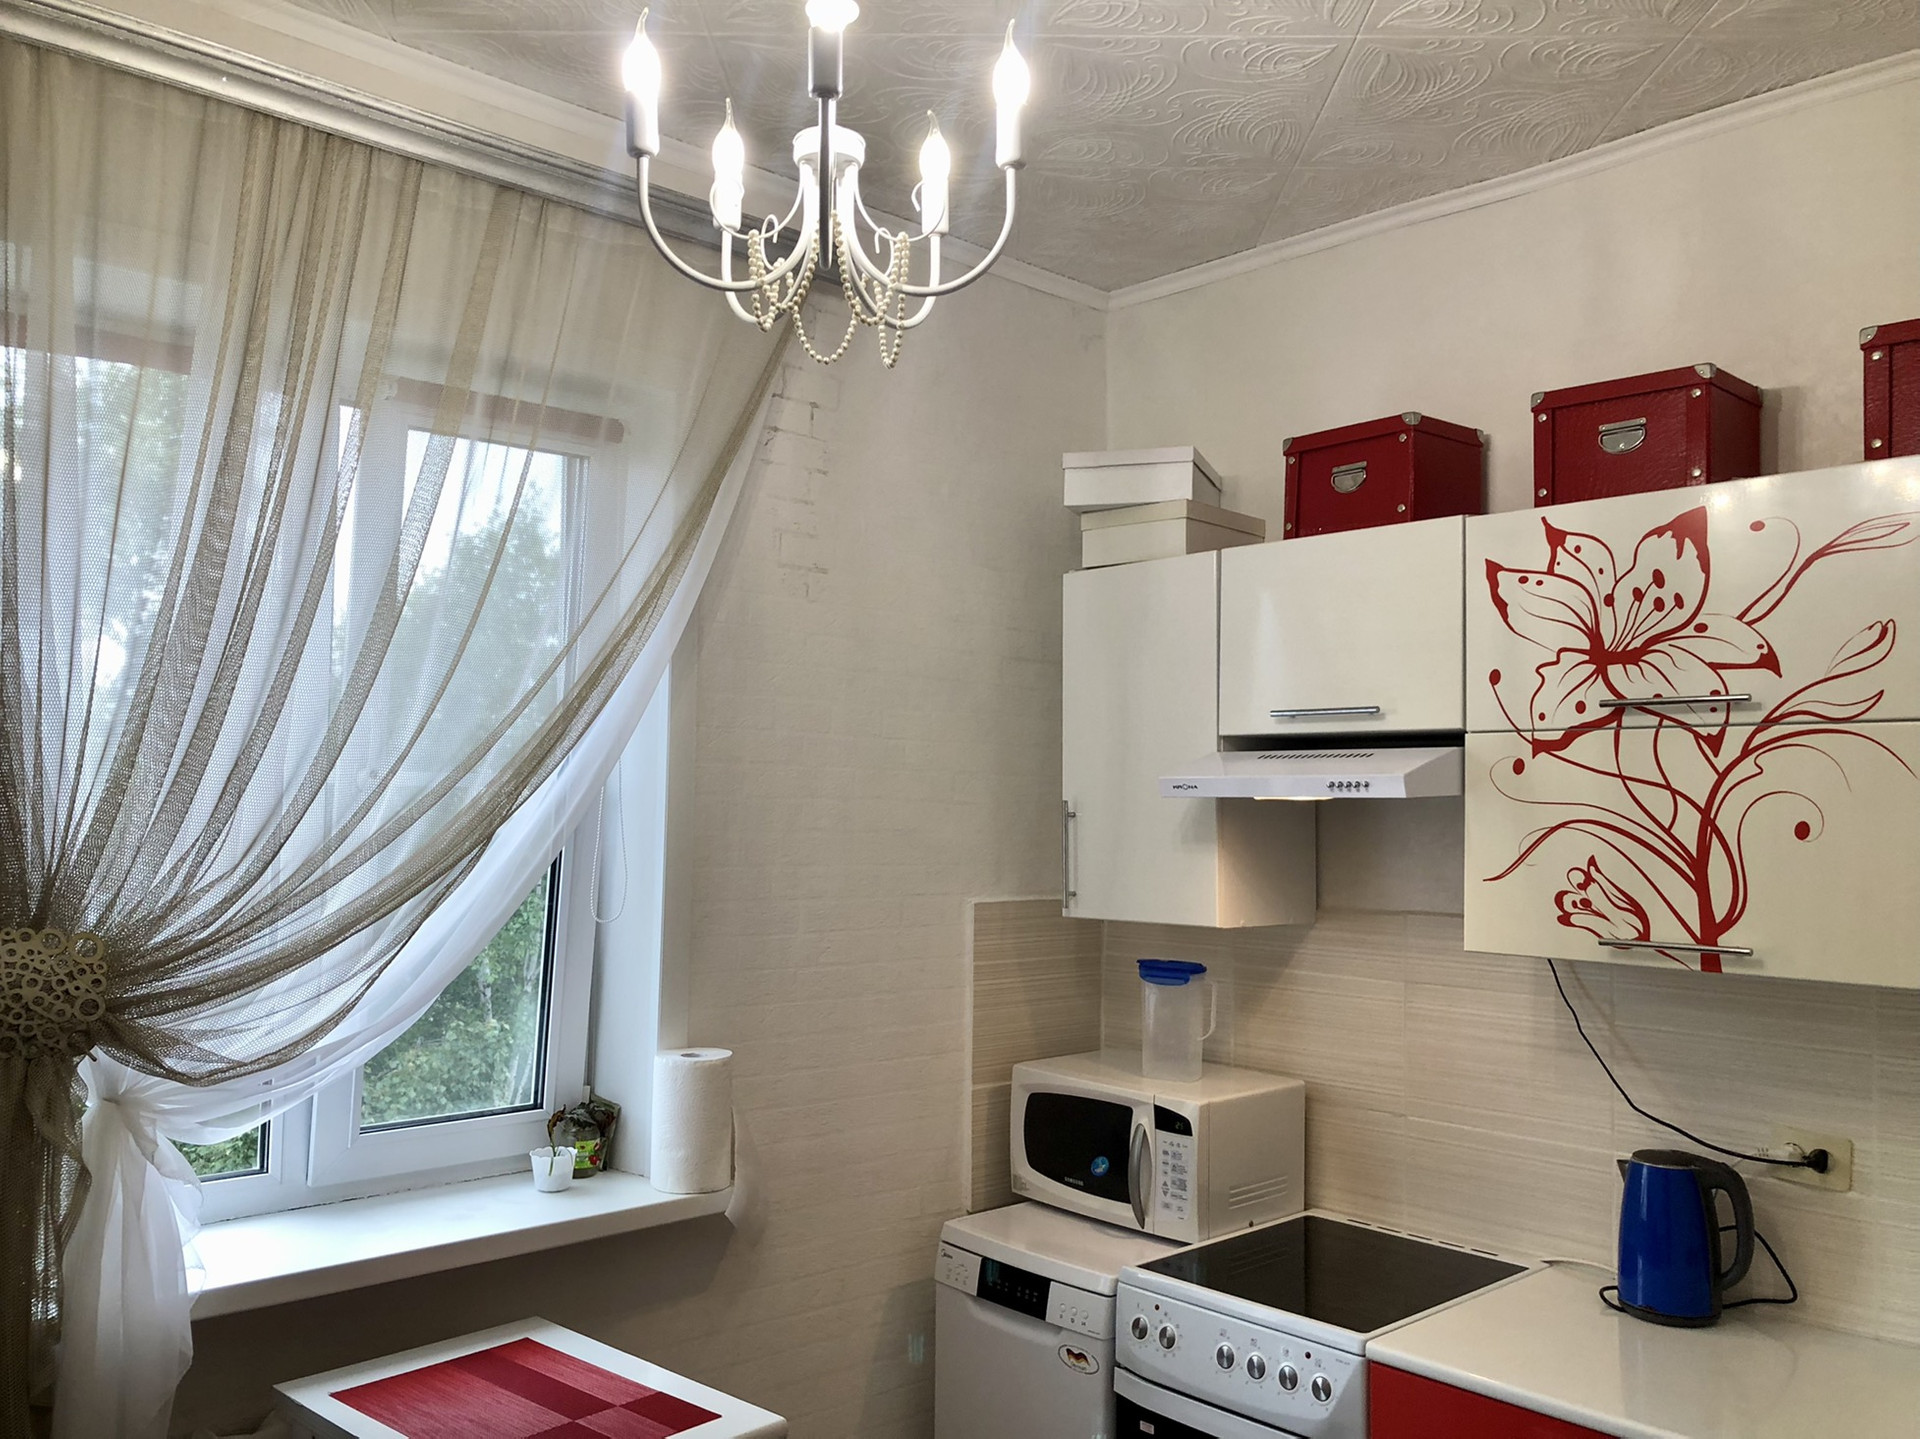 Николаевск на Амуре купить квартиру. Продажа квартир в Комсомольске-на-Амуре-свежие 1 комнатные.